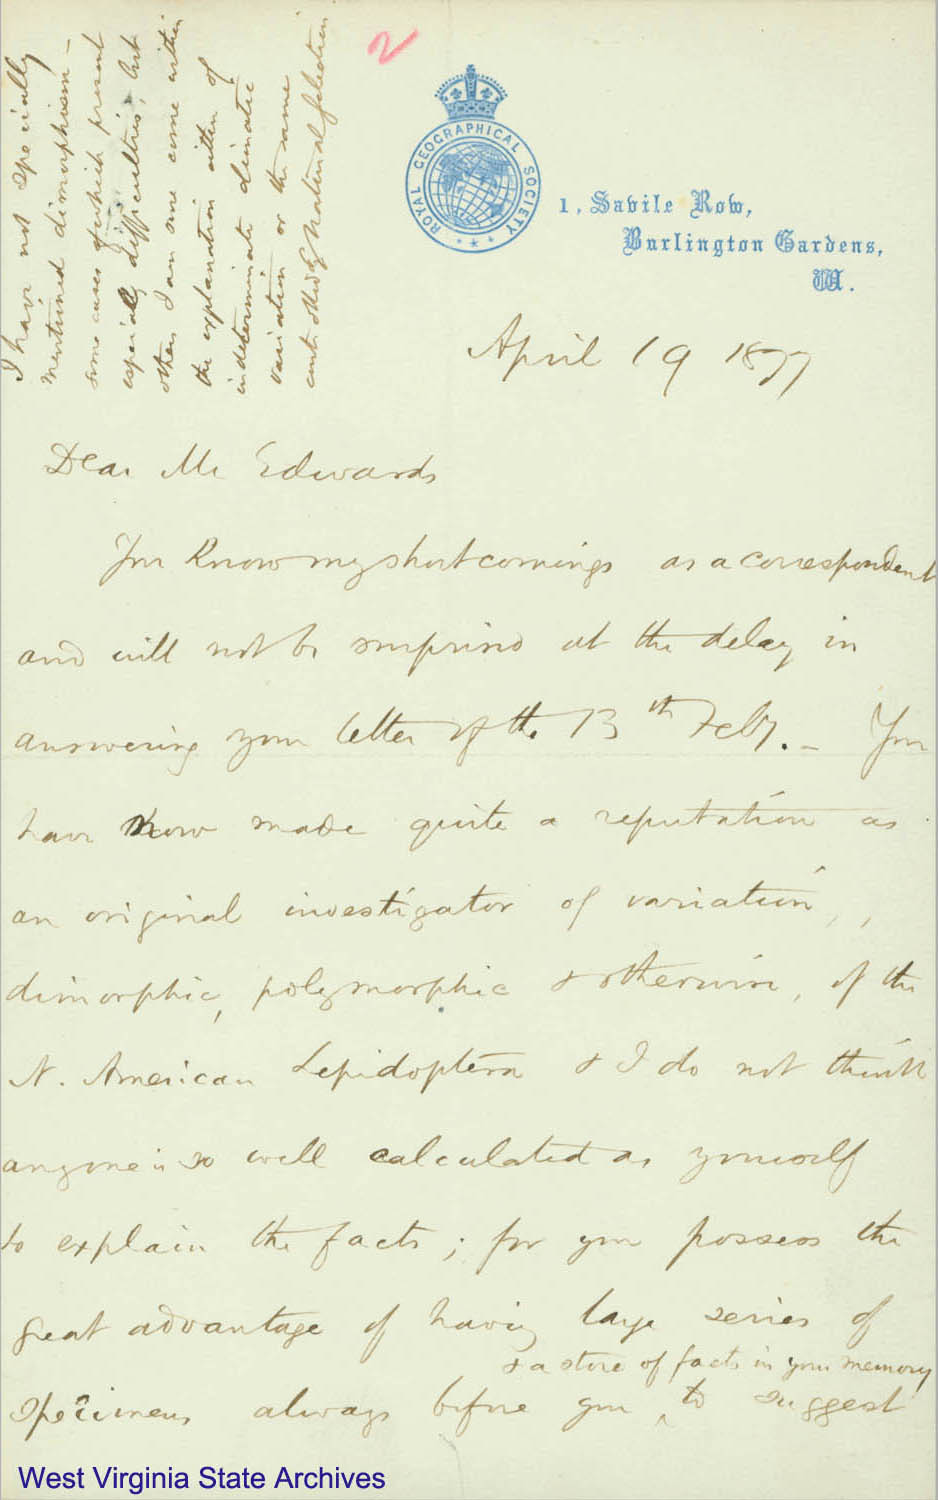 Correspondence from Henry Wallace Bates to William Henry Edwards, regarding entomology, 1877. (Ms79-2)